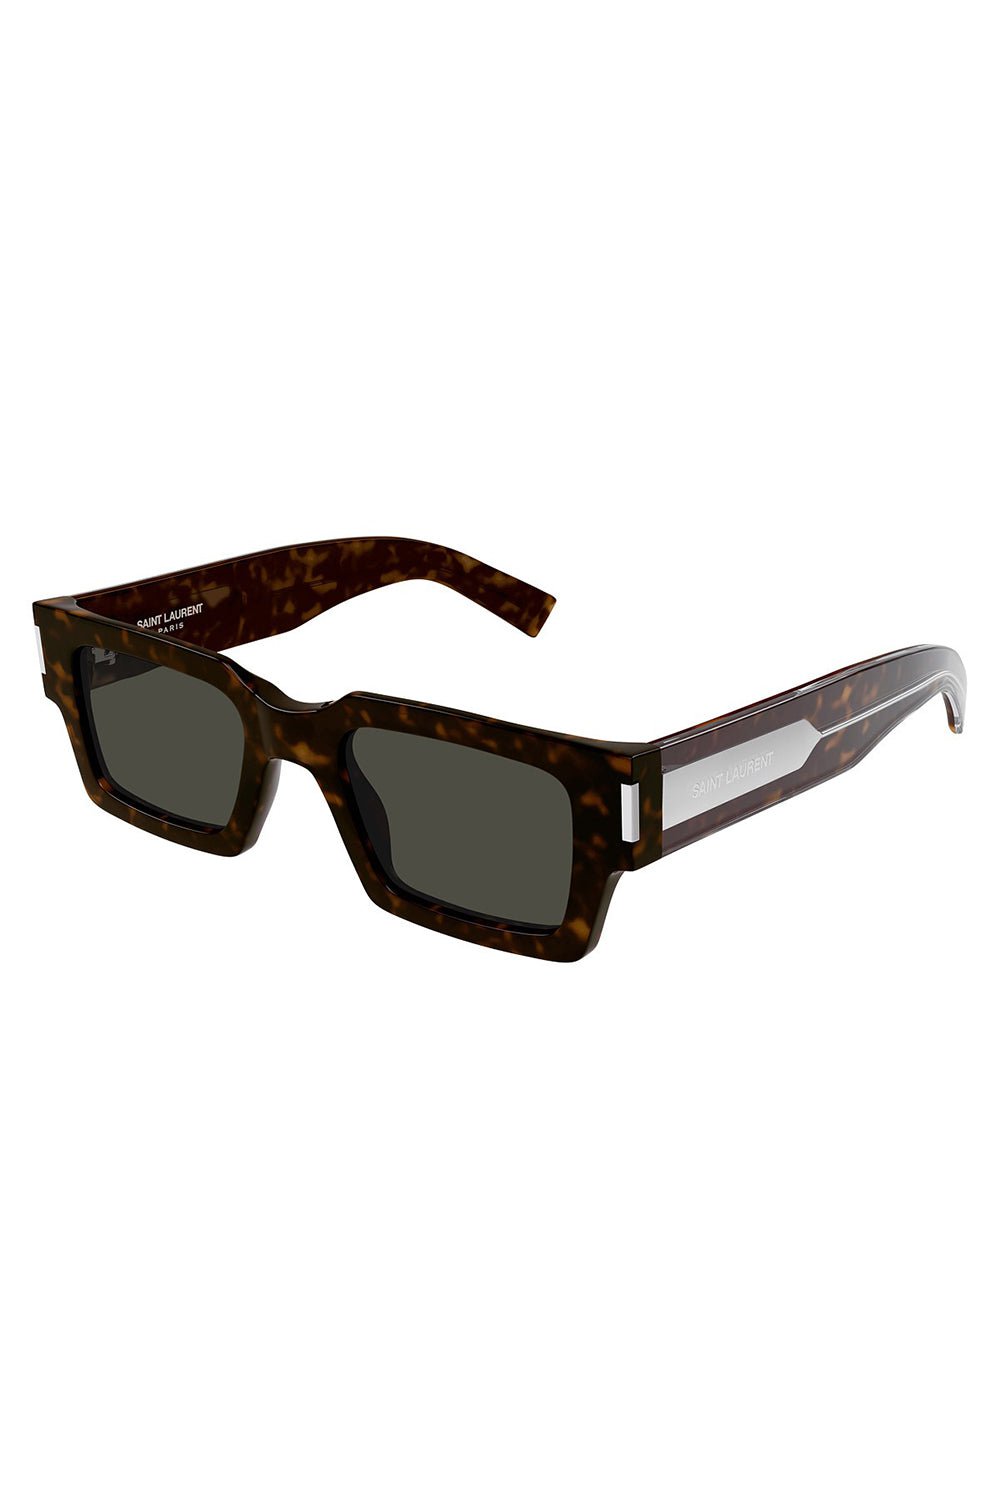 SAINT LAURENT-Classic Rectangle Sunglasses-HAV/GRY